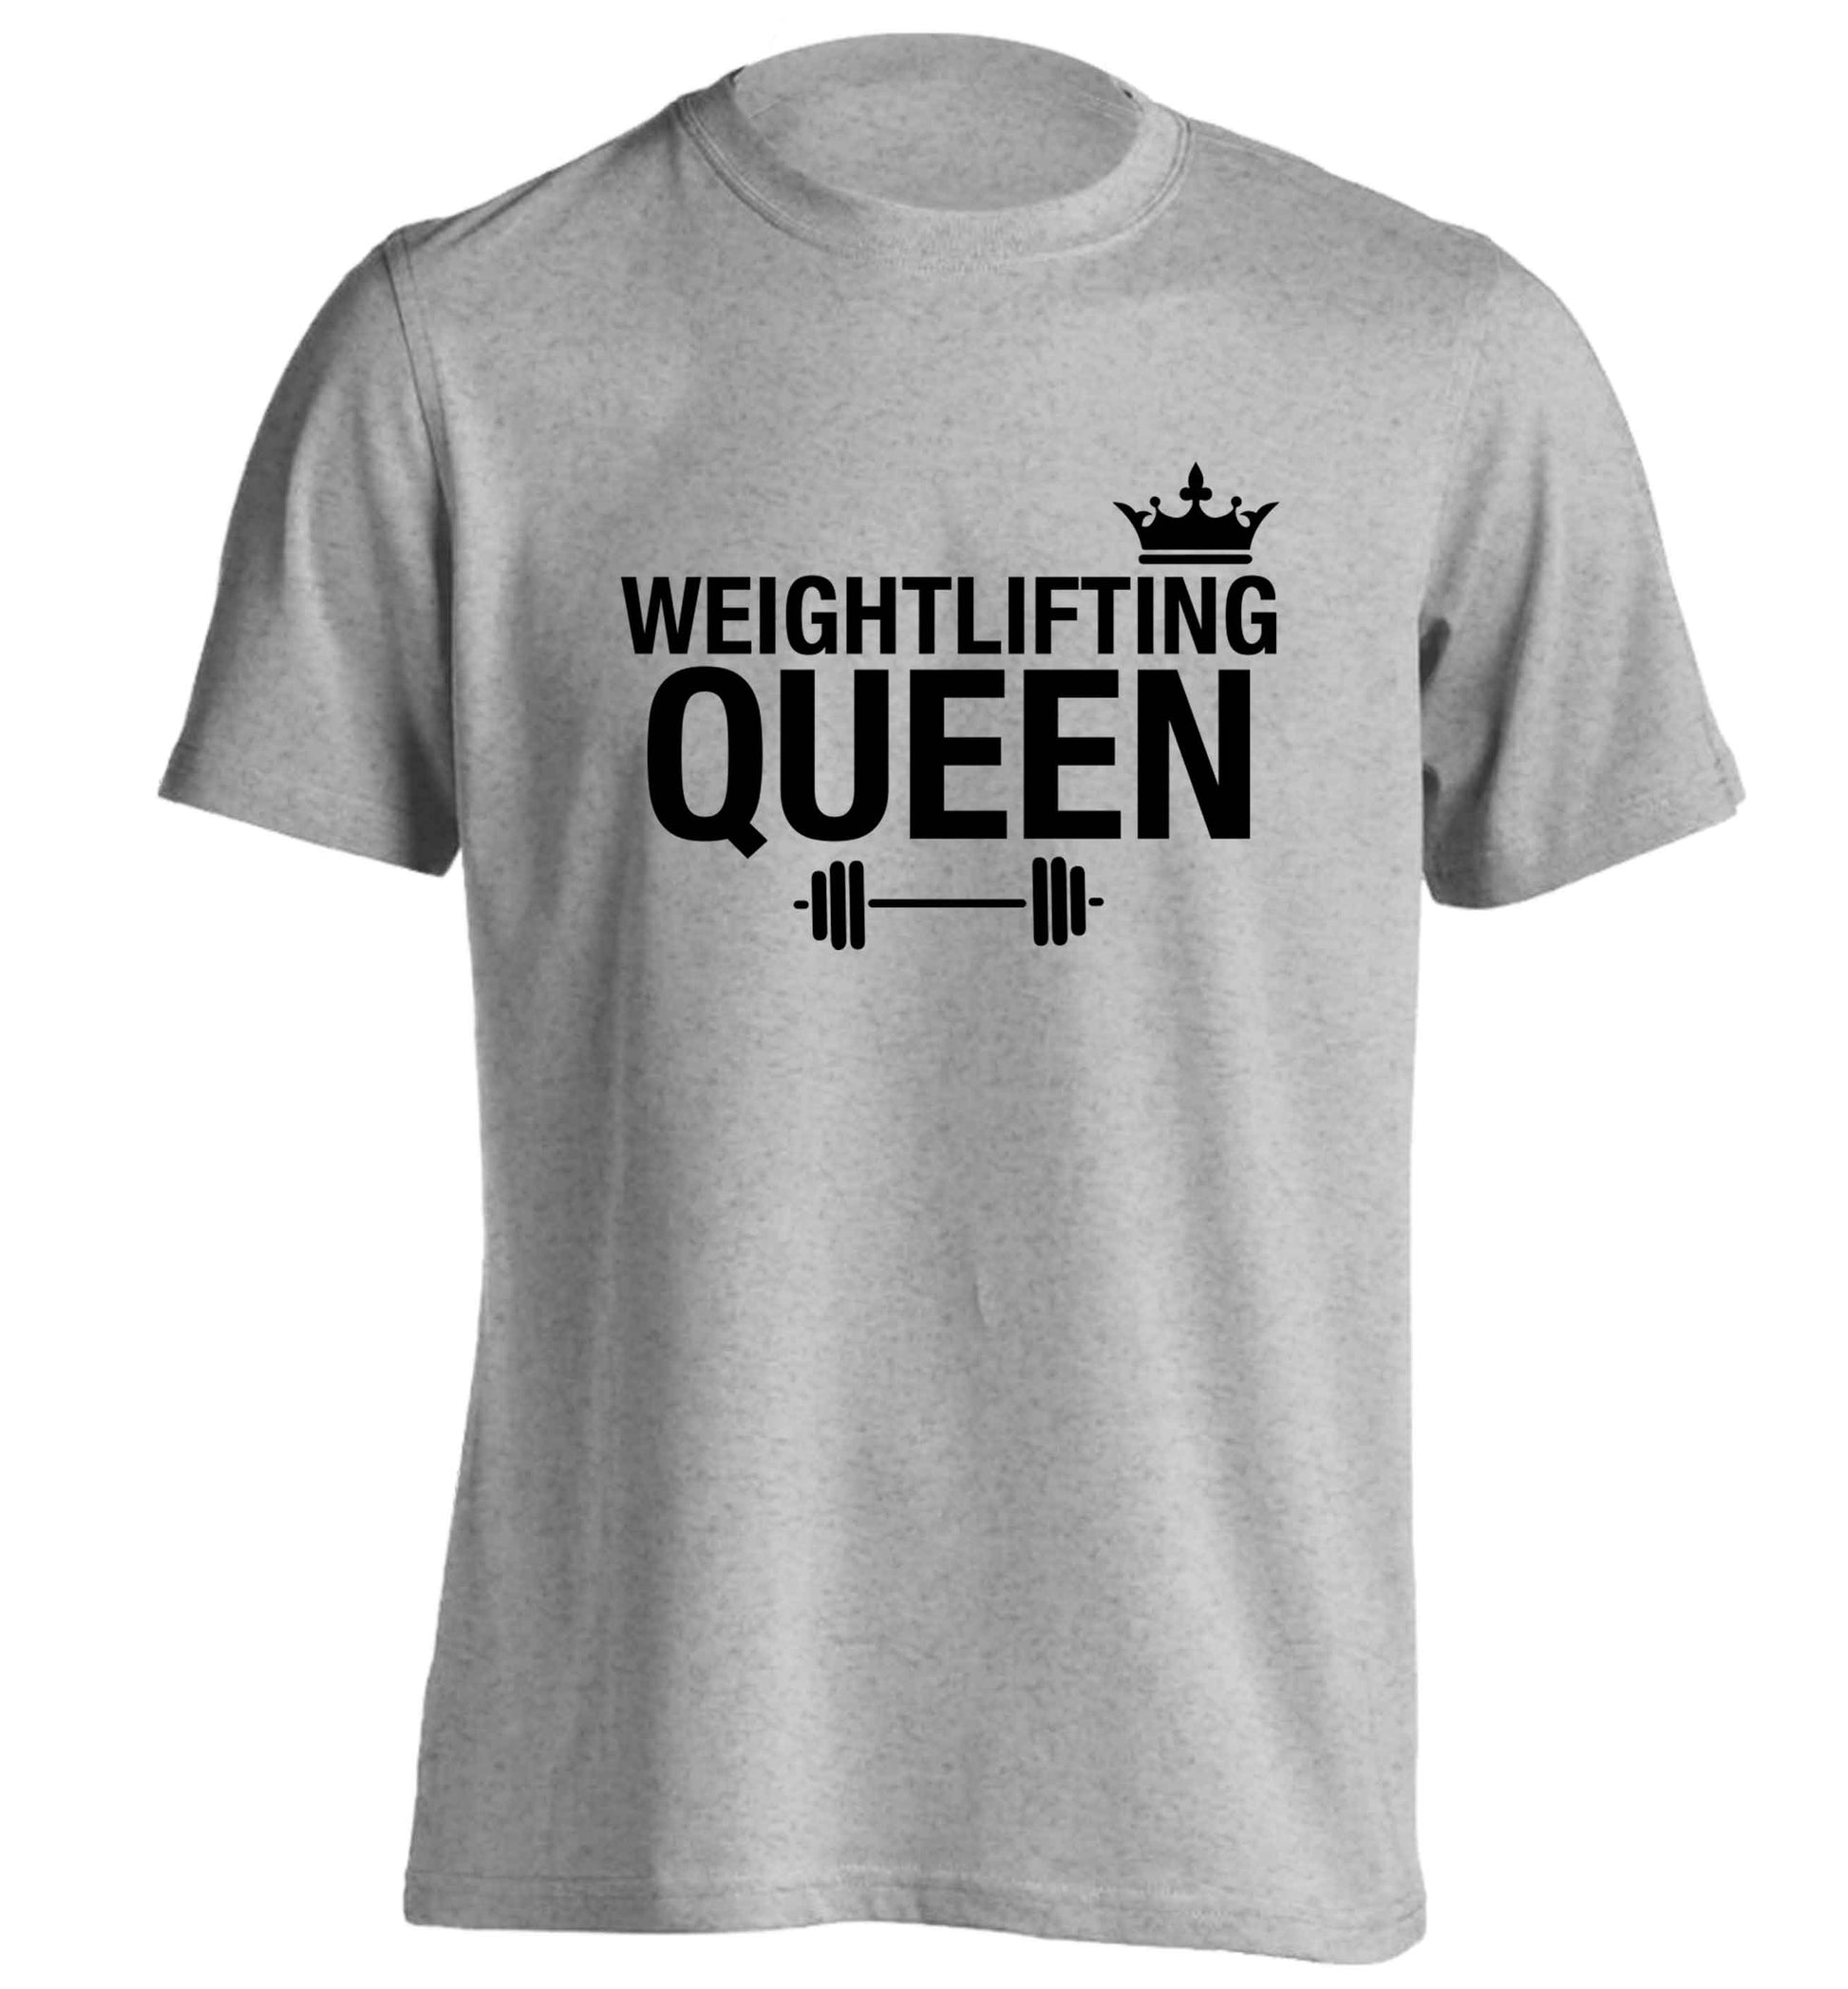 Weightlifting Queen adults unisex grey Tshirt 2XL